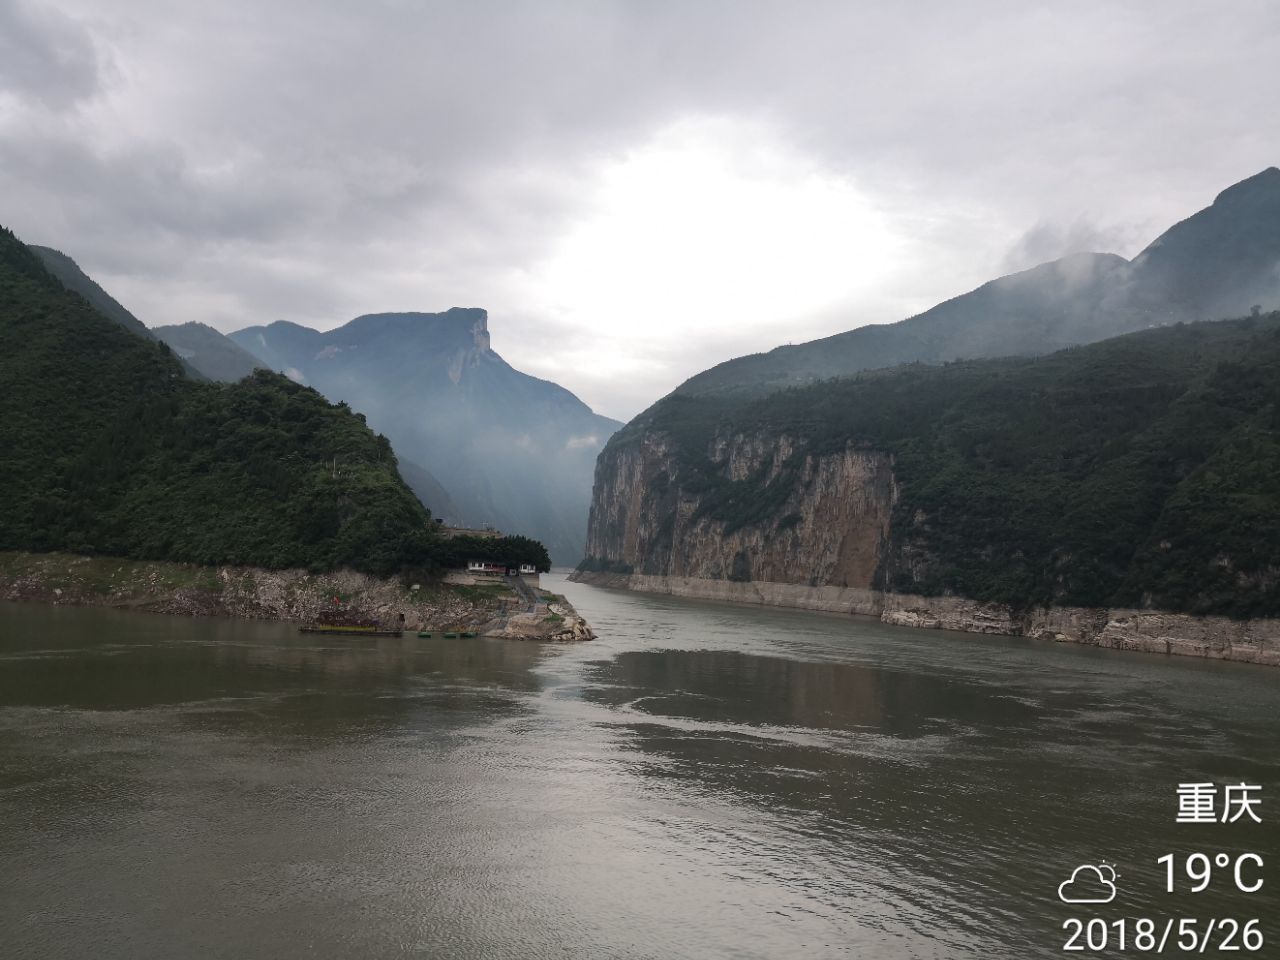 【携程攻略】宜昌三峡大瀑布景点,三峡大瀑布原名白果树瀑布，被誉为“中国十大名瀑”之一，感觉与黄果…